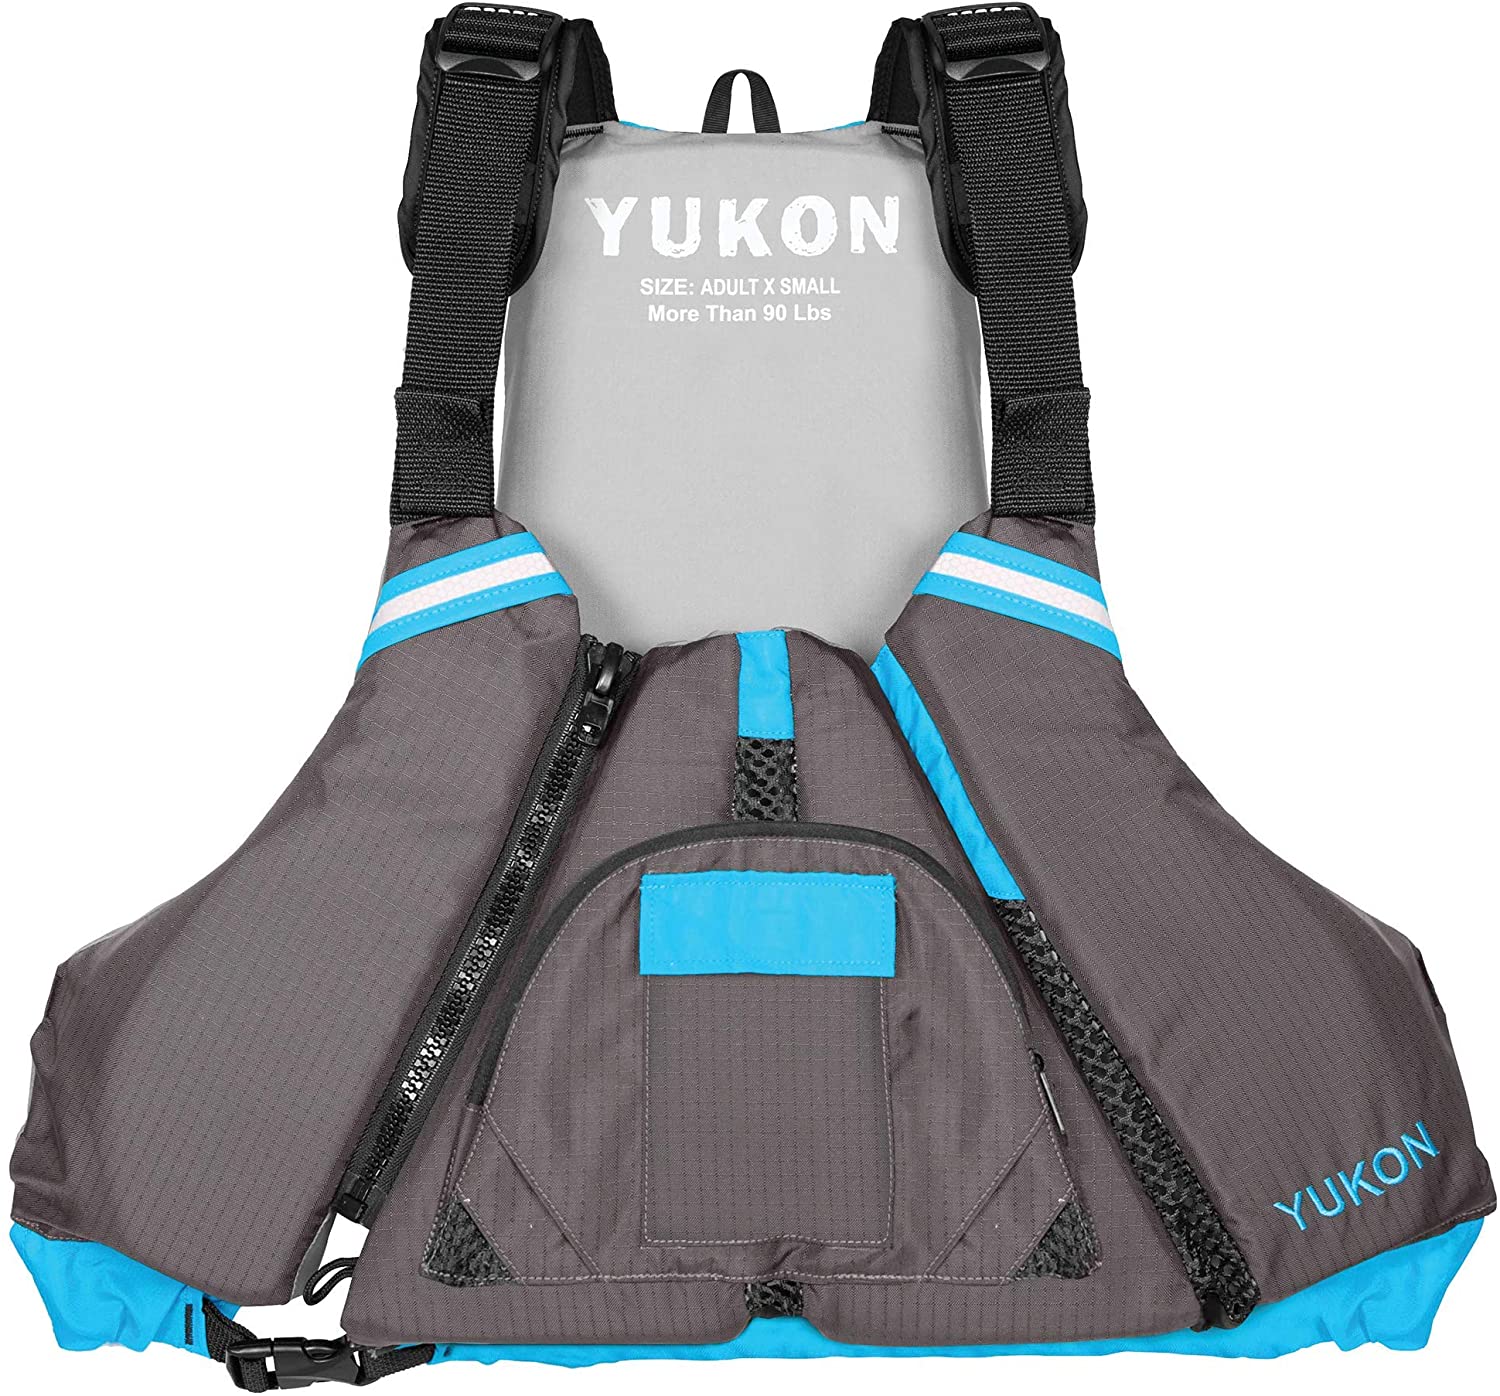 Yukon EPIC Paddle Life Vest Jacket